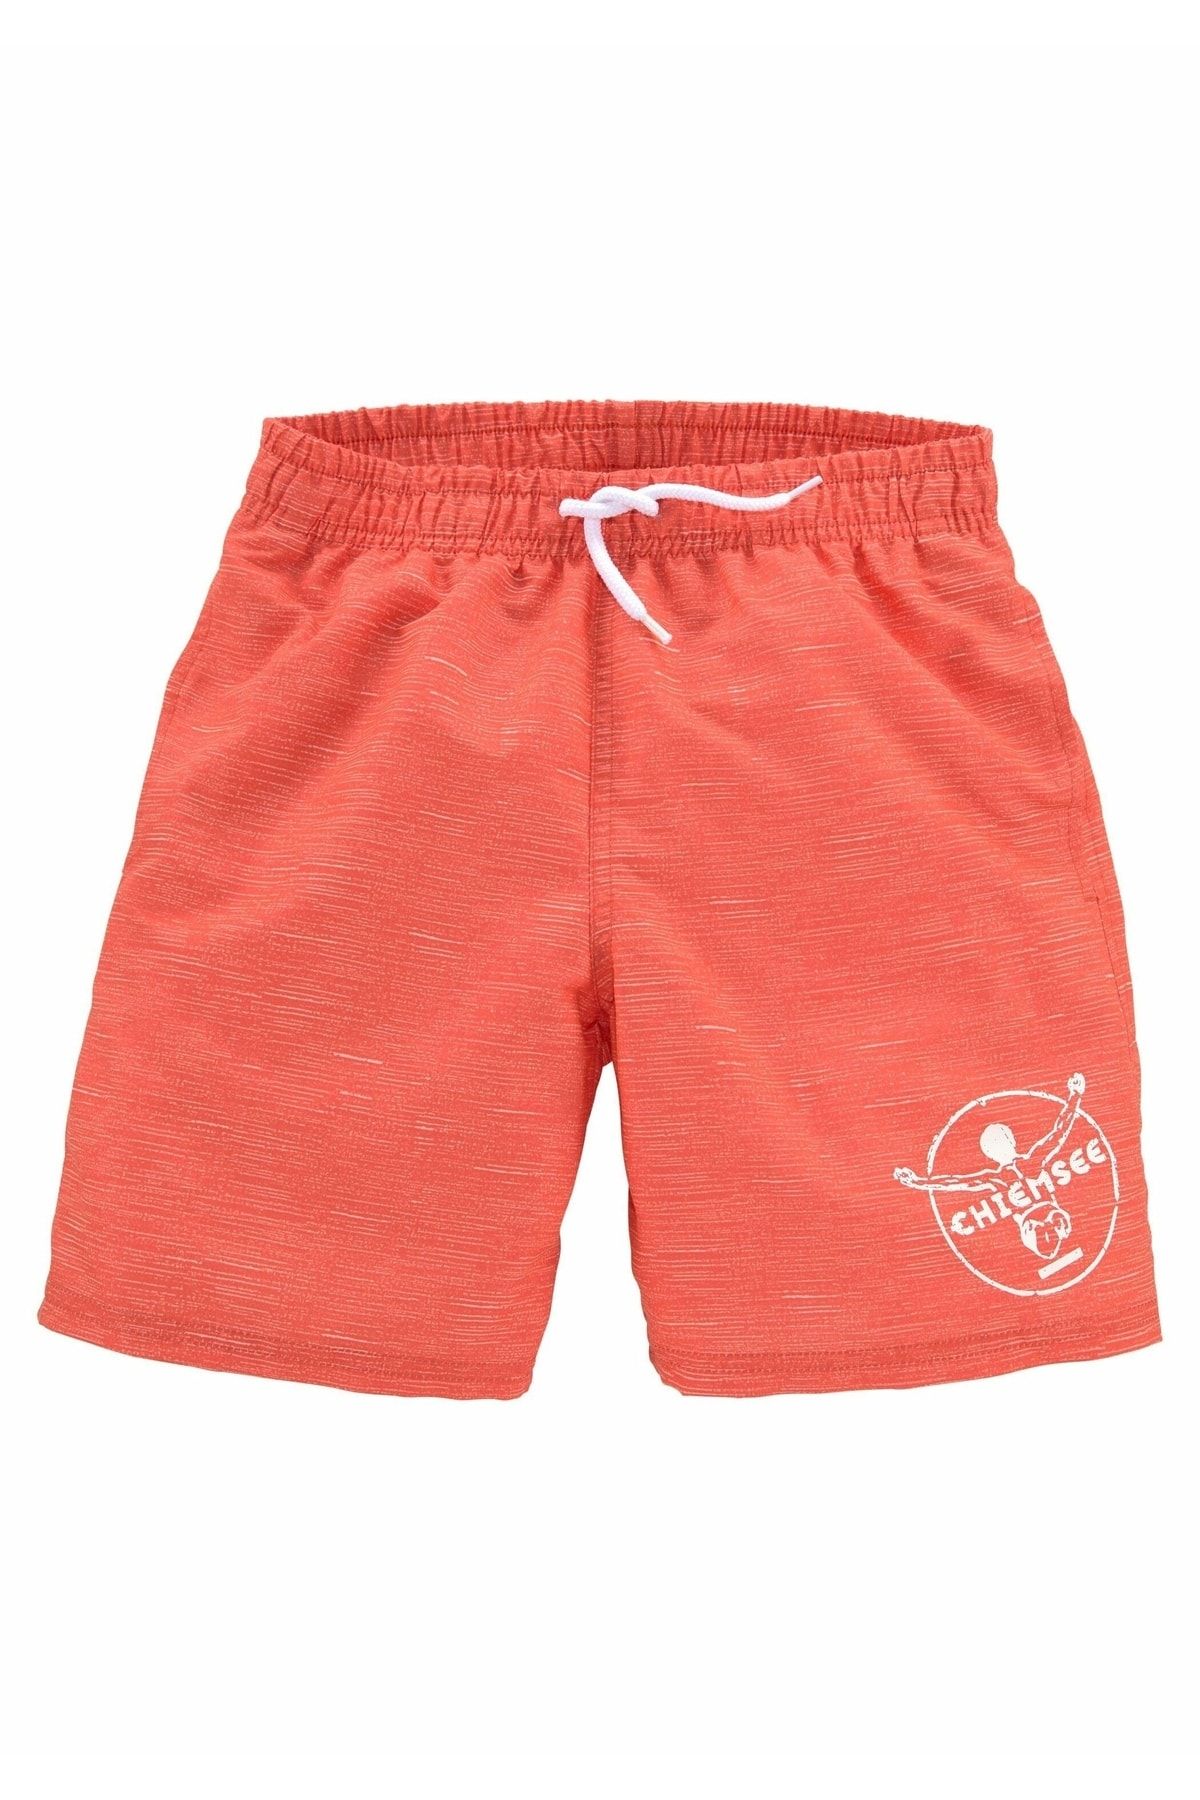 Chiemsee Badeshorts - - Orange - Trendyol Unifarben